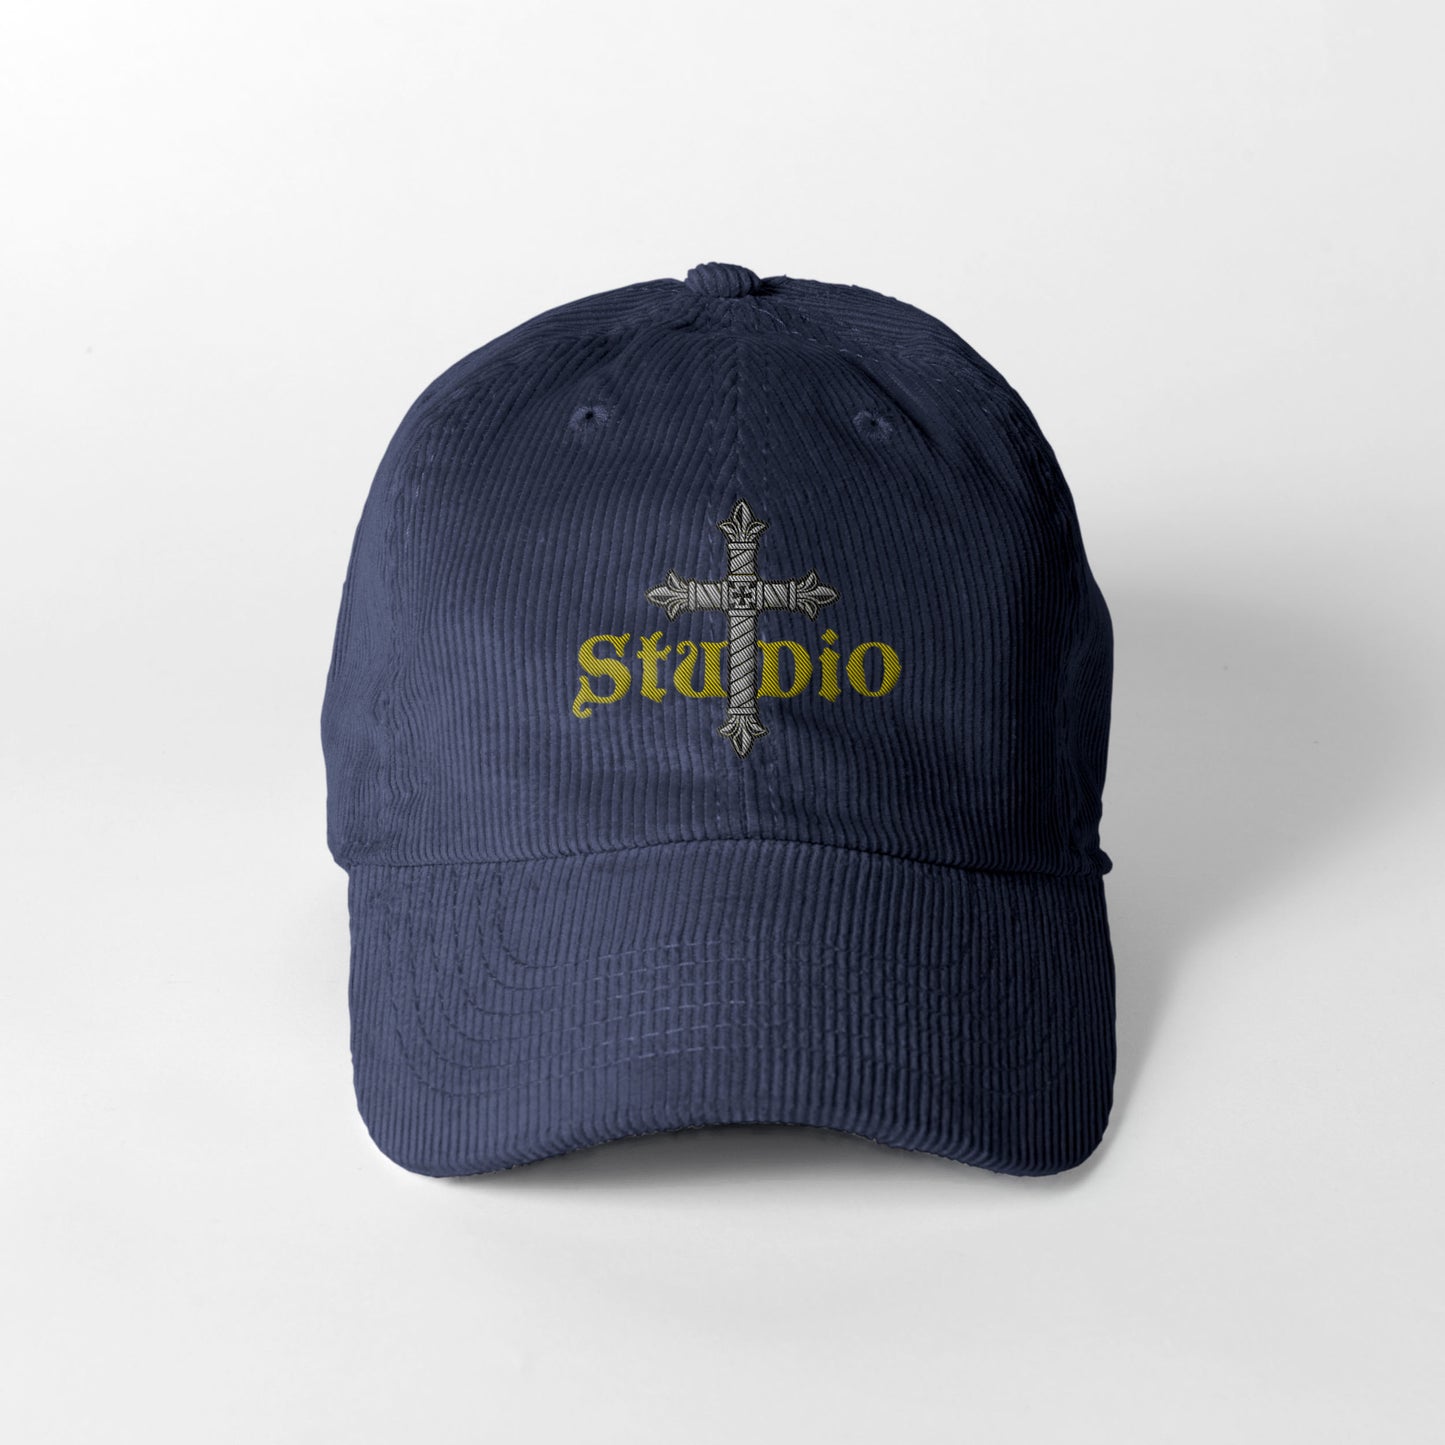 Studio + 皇家十字刺绣灯芯绒帽